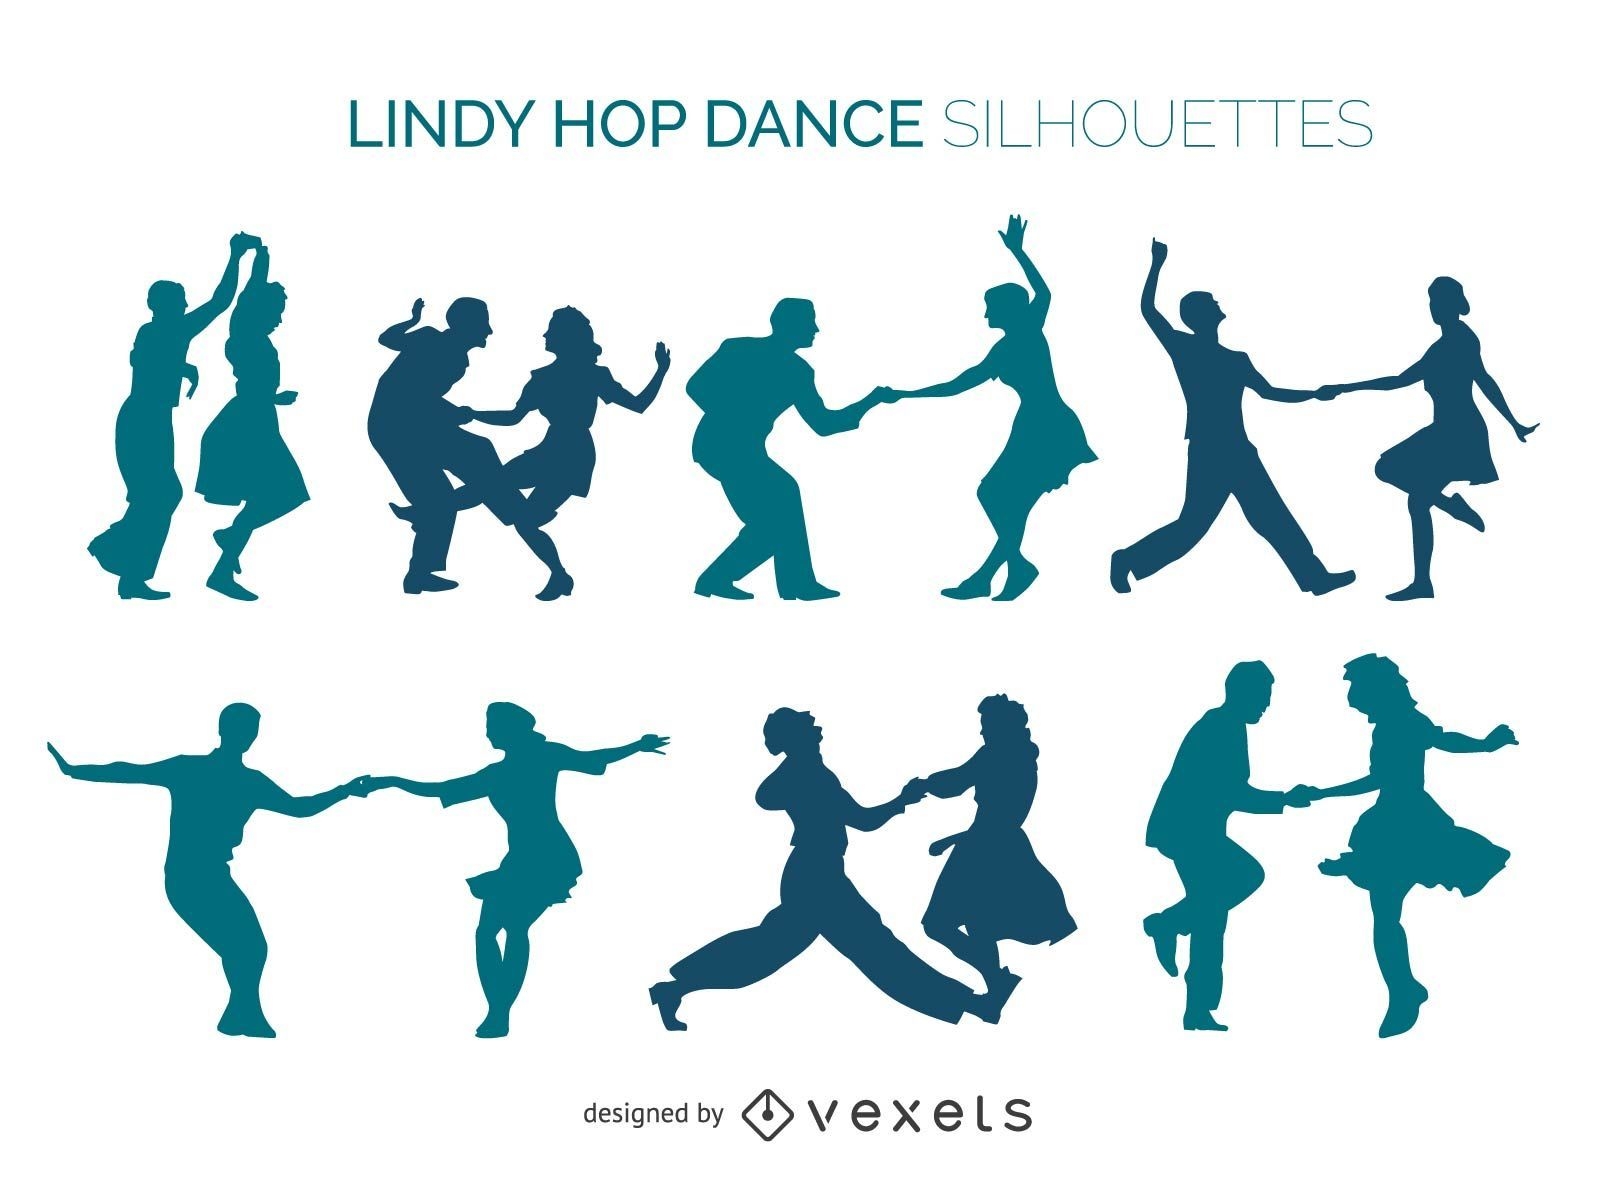 Lindy Hop dancers silhouette set